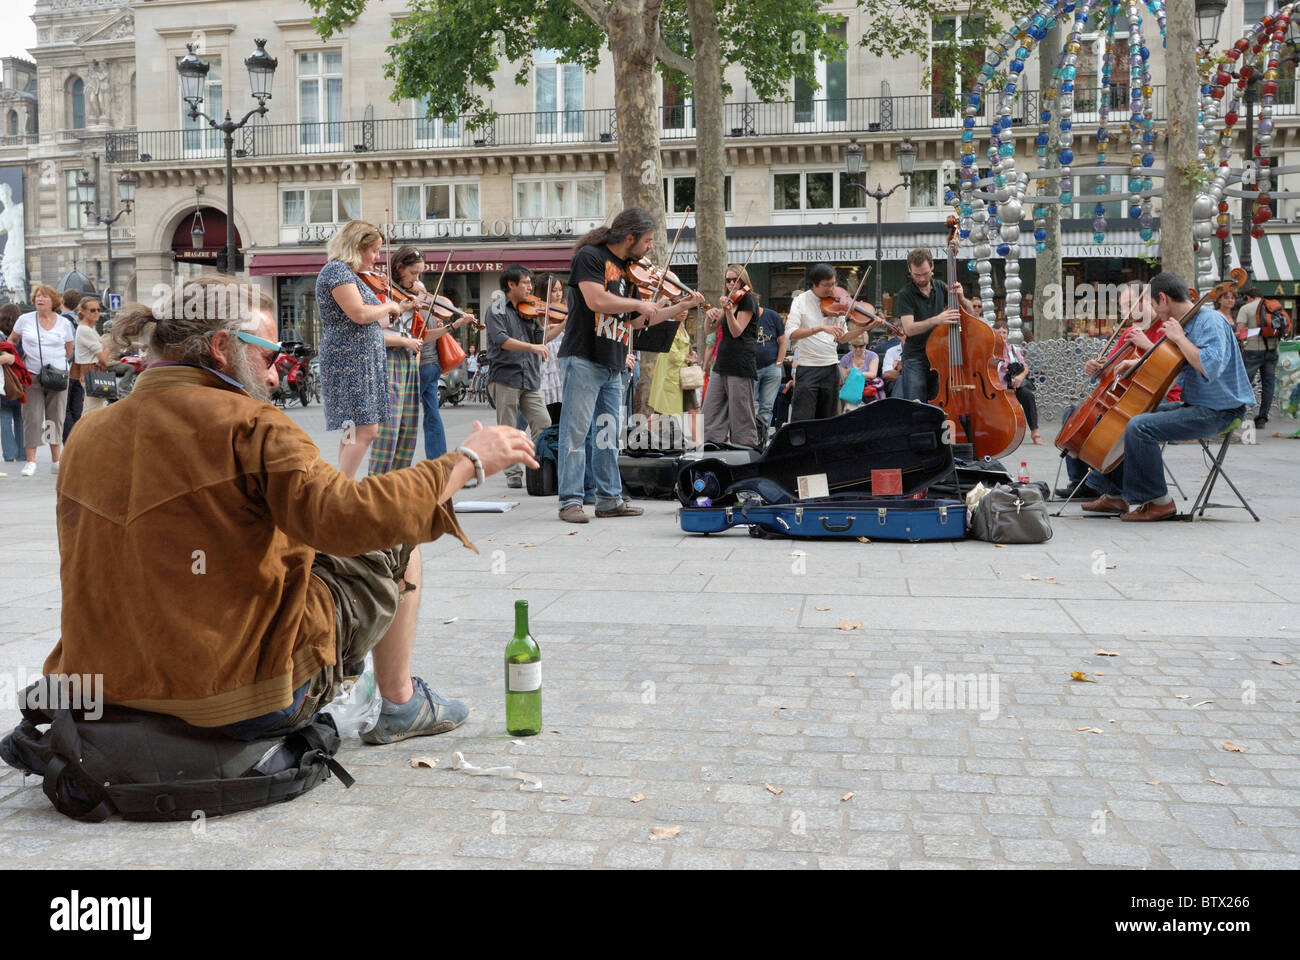 Classique Metropolitian musicians perform at Place Colette, a square at Rue  Saint-Honoré and Avenue de l'Opéra, Paris France Stock Photo